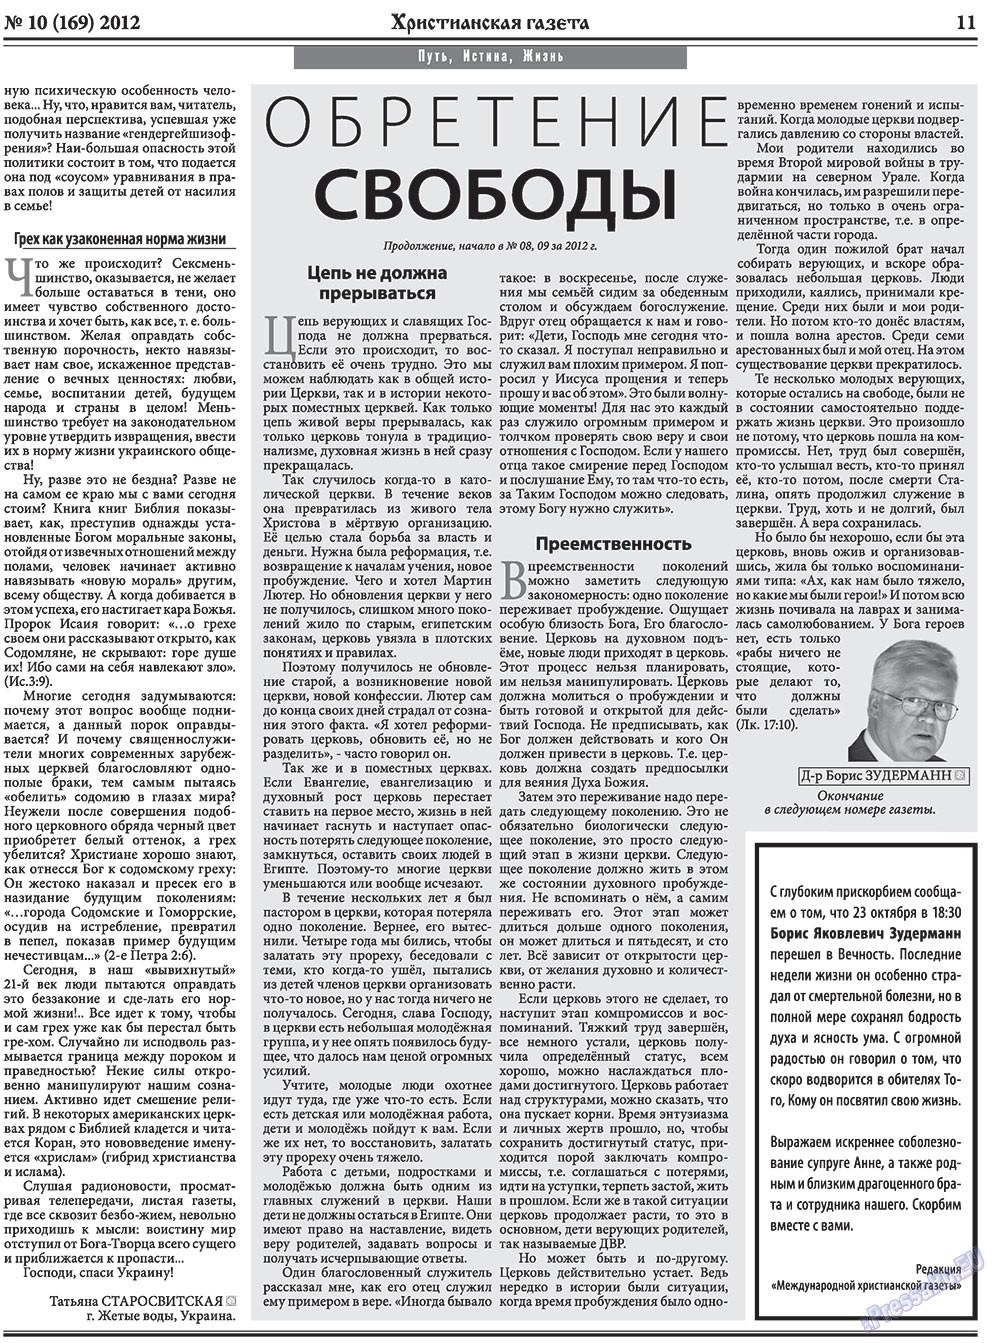 Христианская газета (газета). 2012 год, номер 10, стр. 11